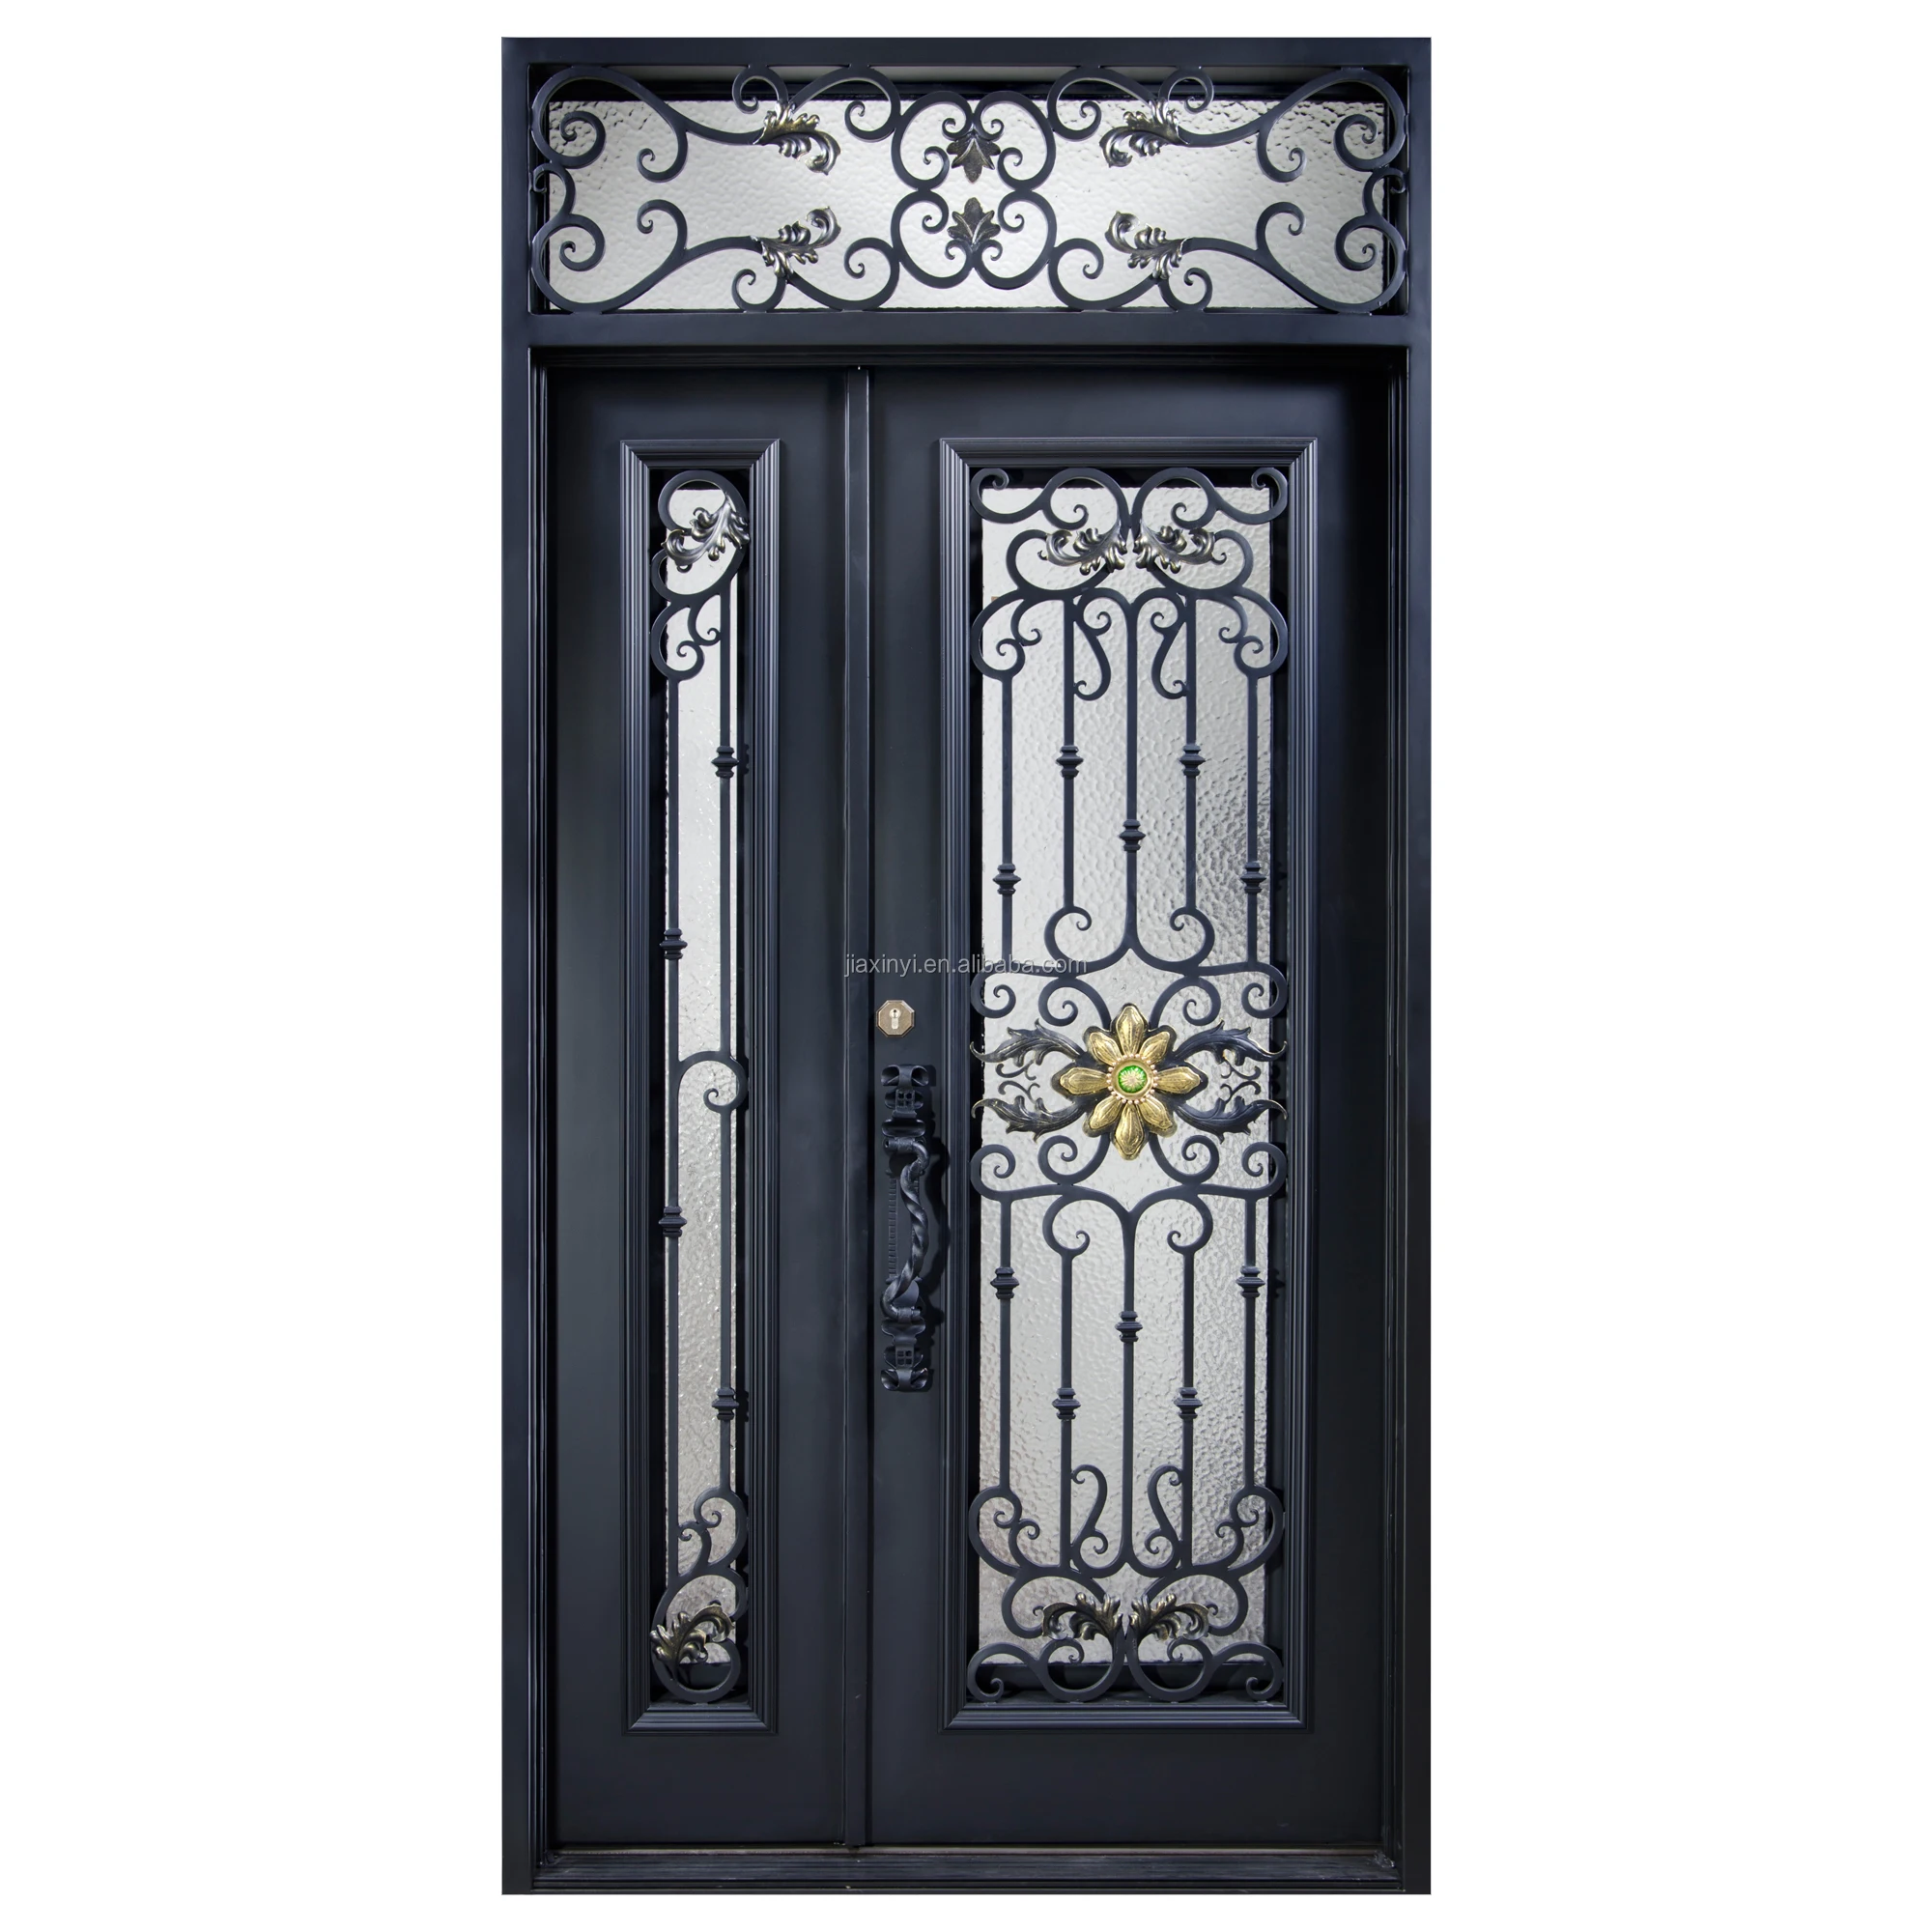 Wrought Iron Single/double Door Design Safety Door Design